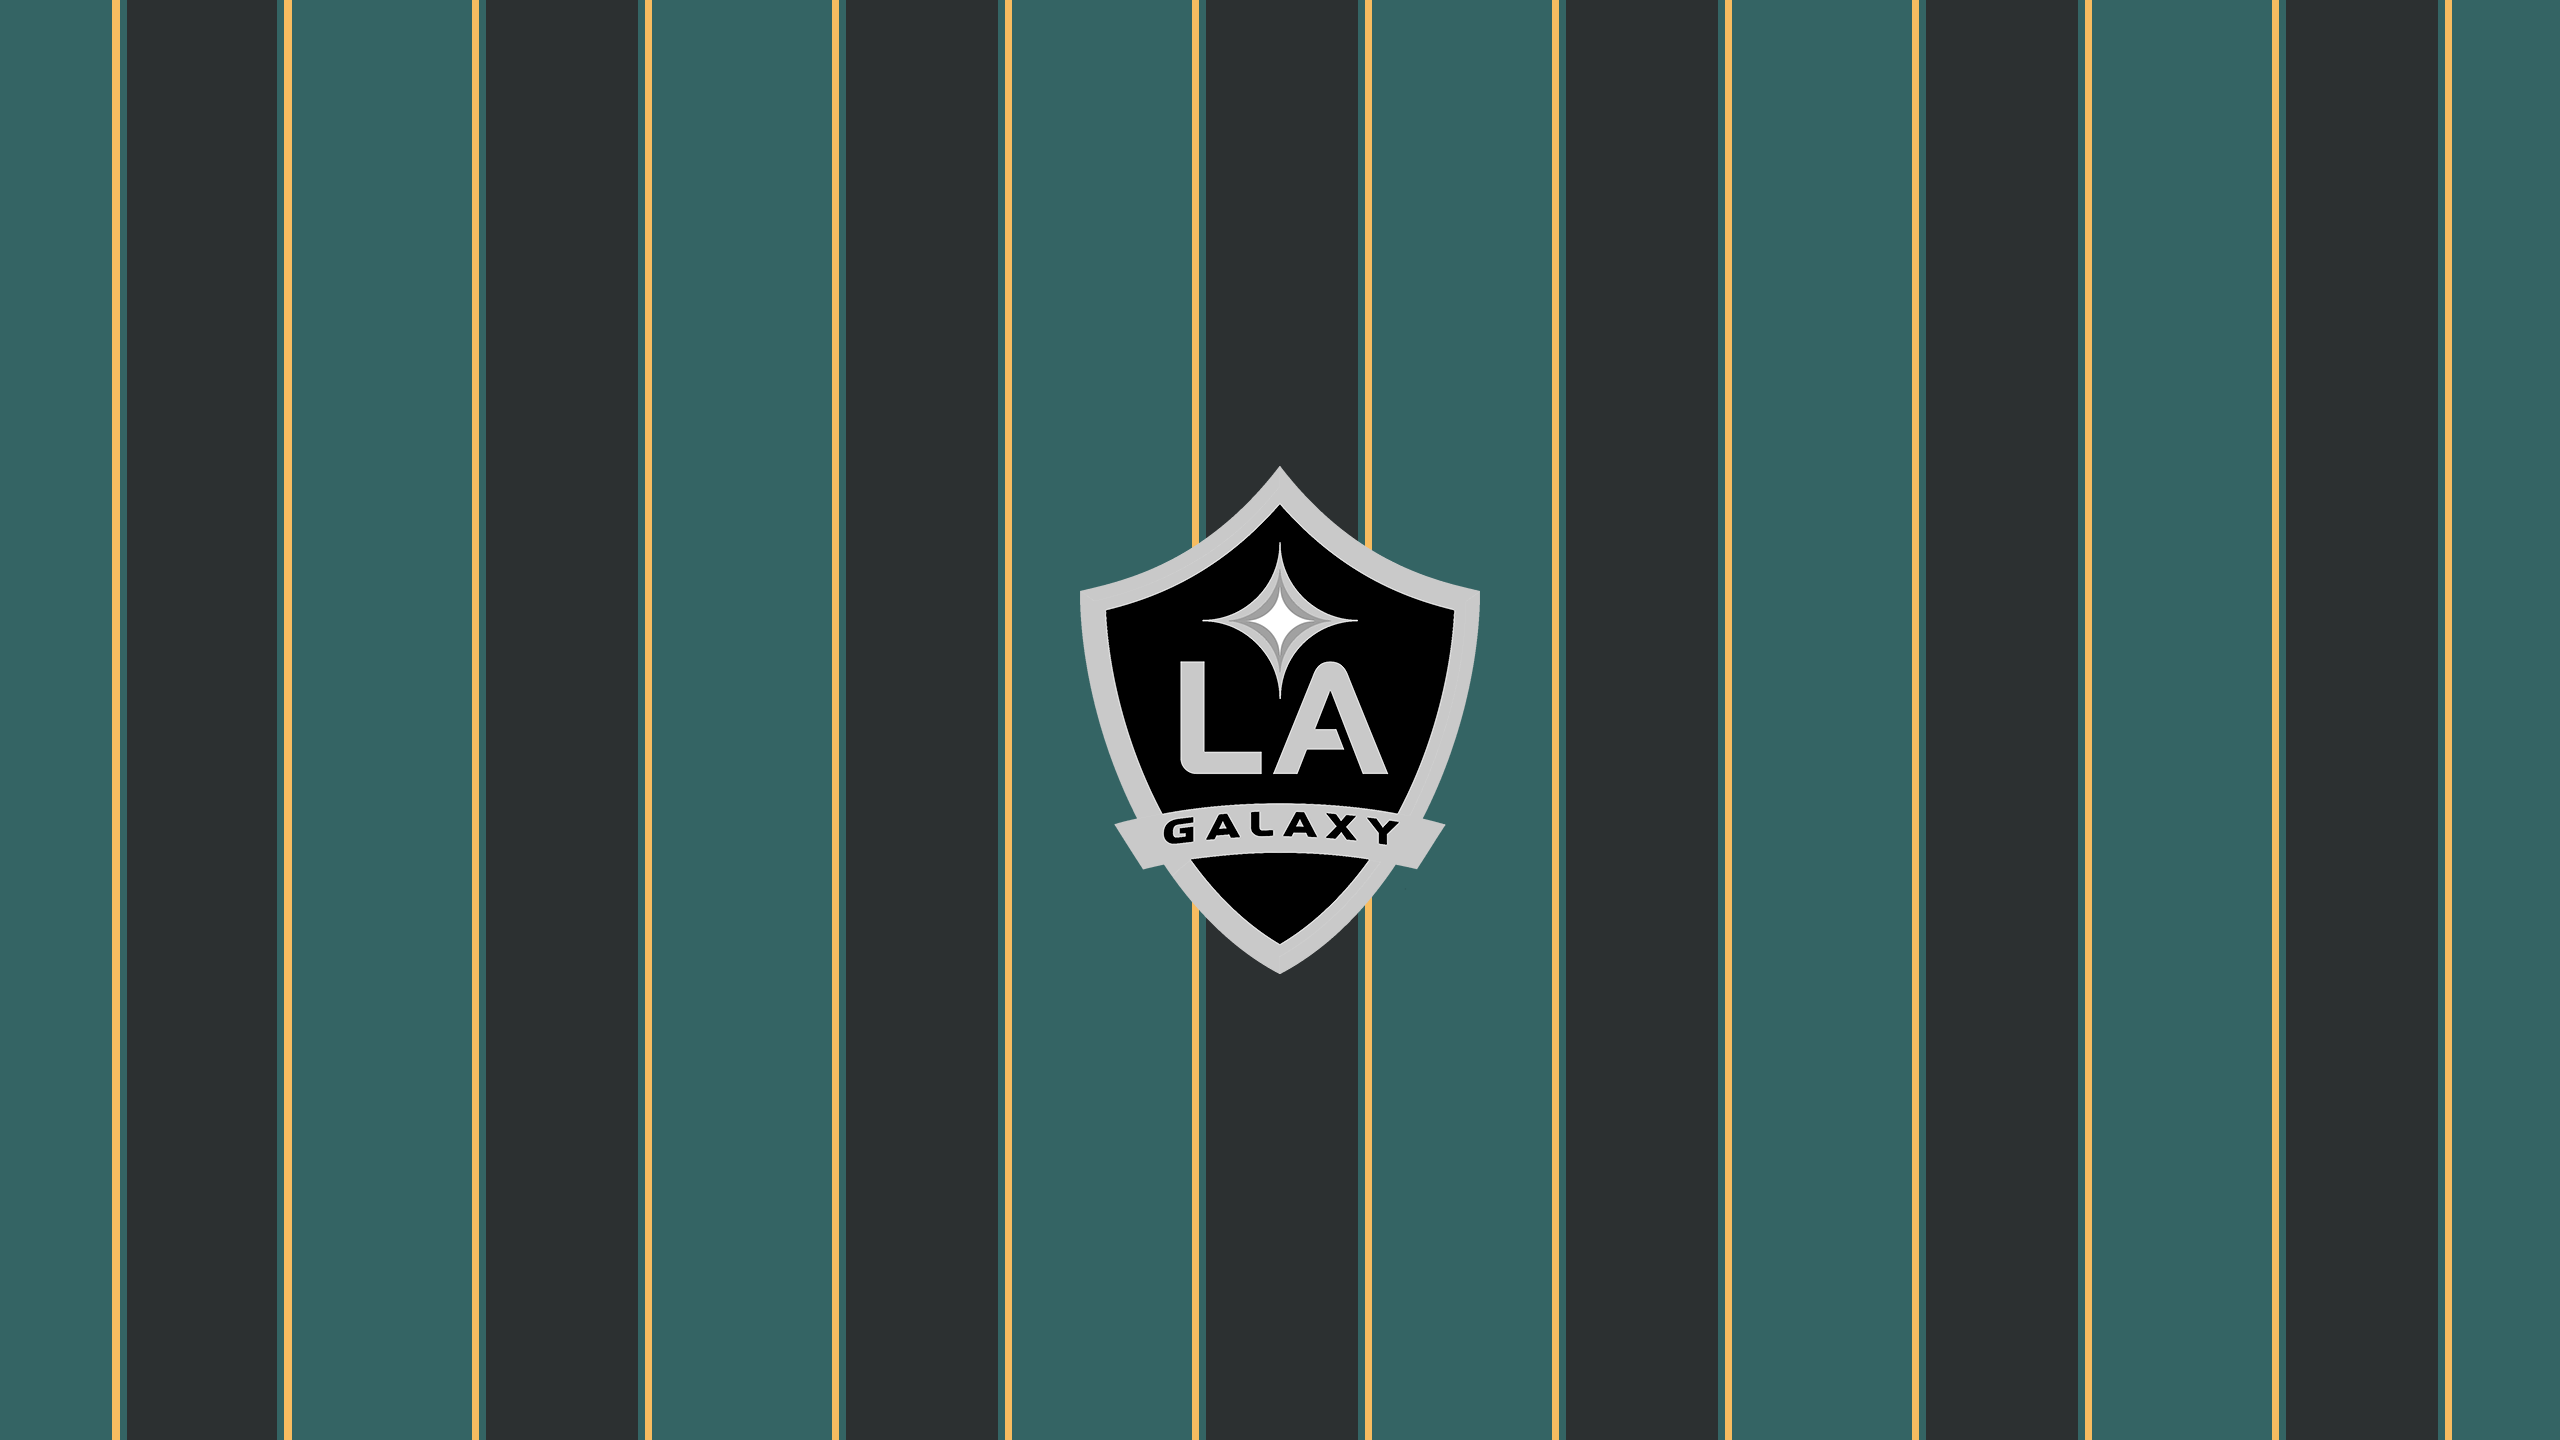 LA Galaxy - Major League Soccer - Square Bettor